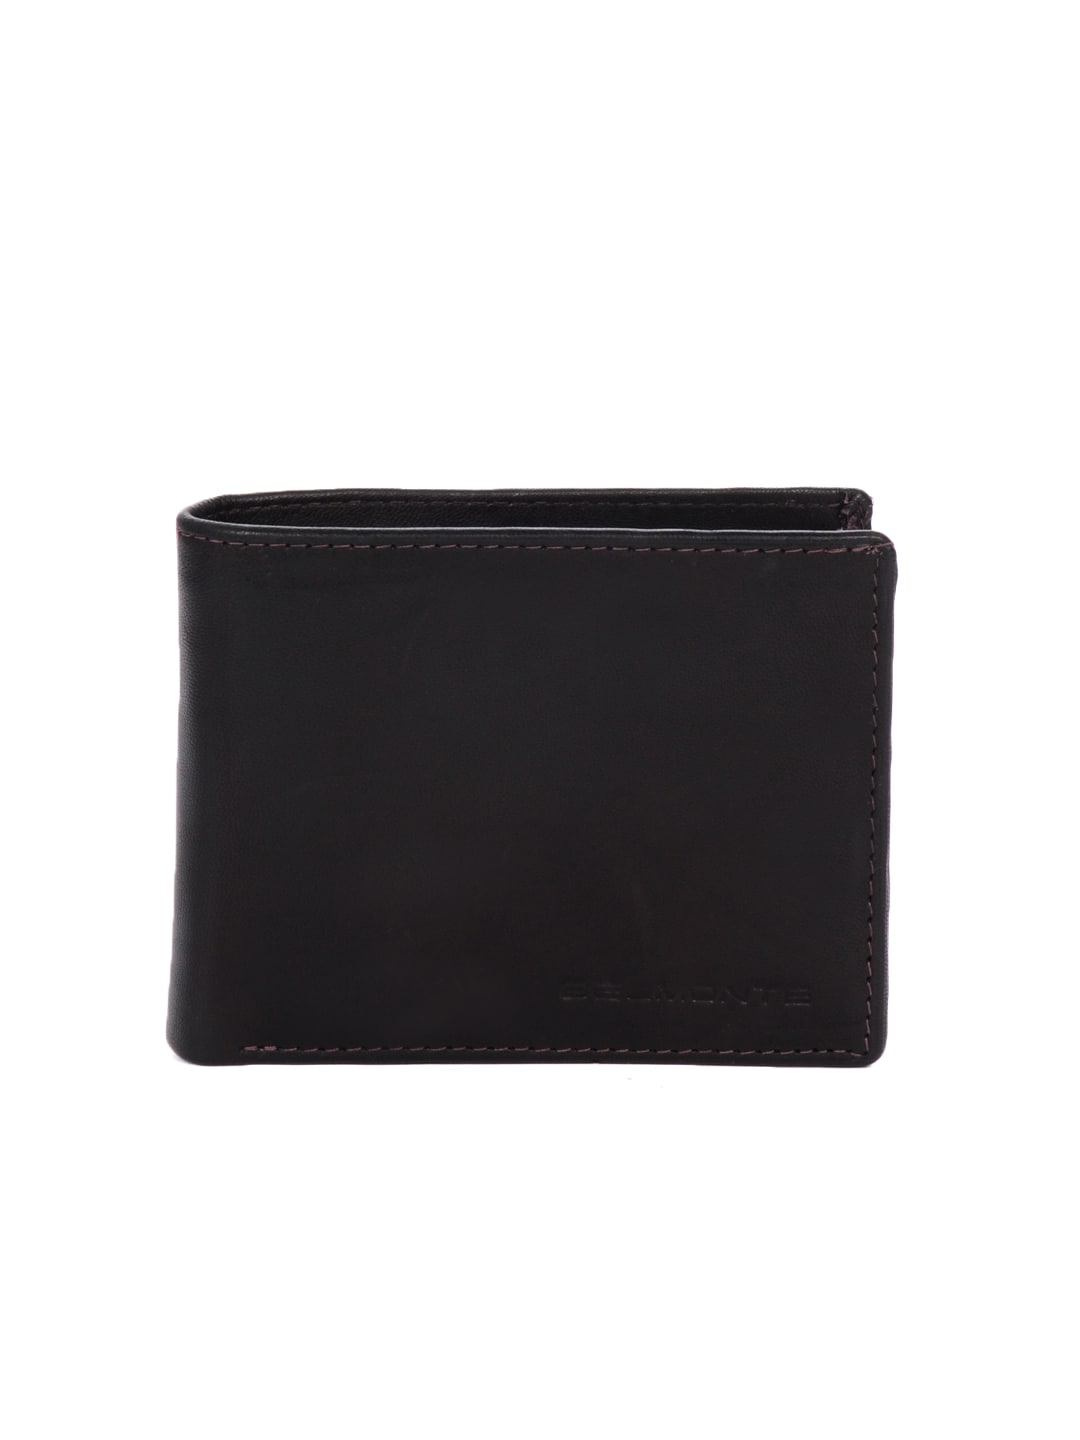 Belmonte Men Leather Black Wallet